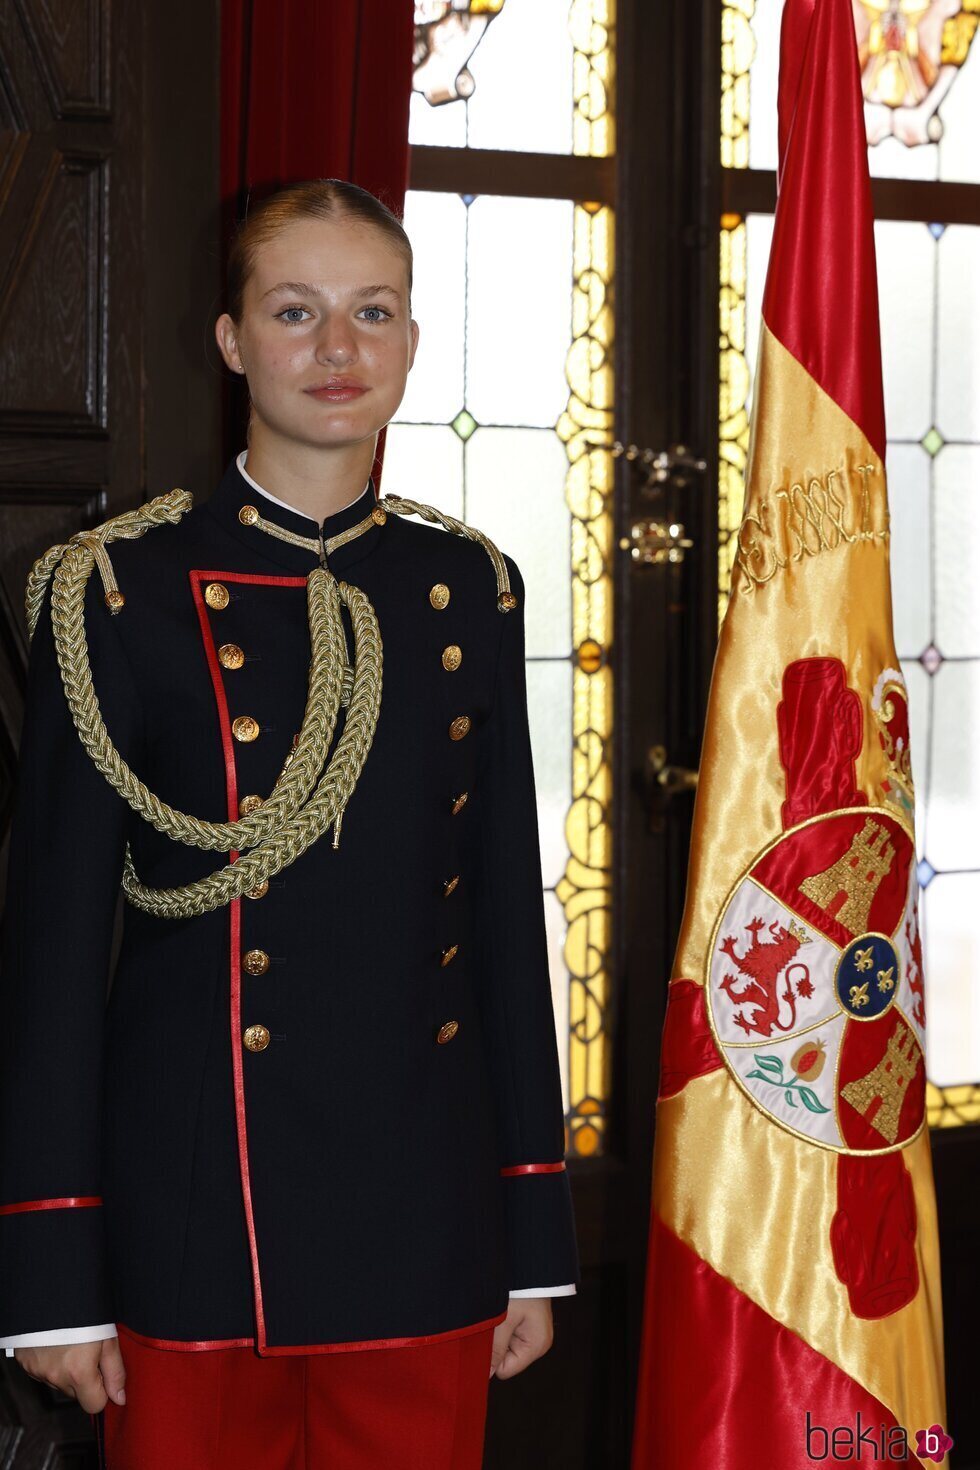 Foto oficial de la Princesa Leonor en su Jura de Bandera